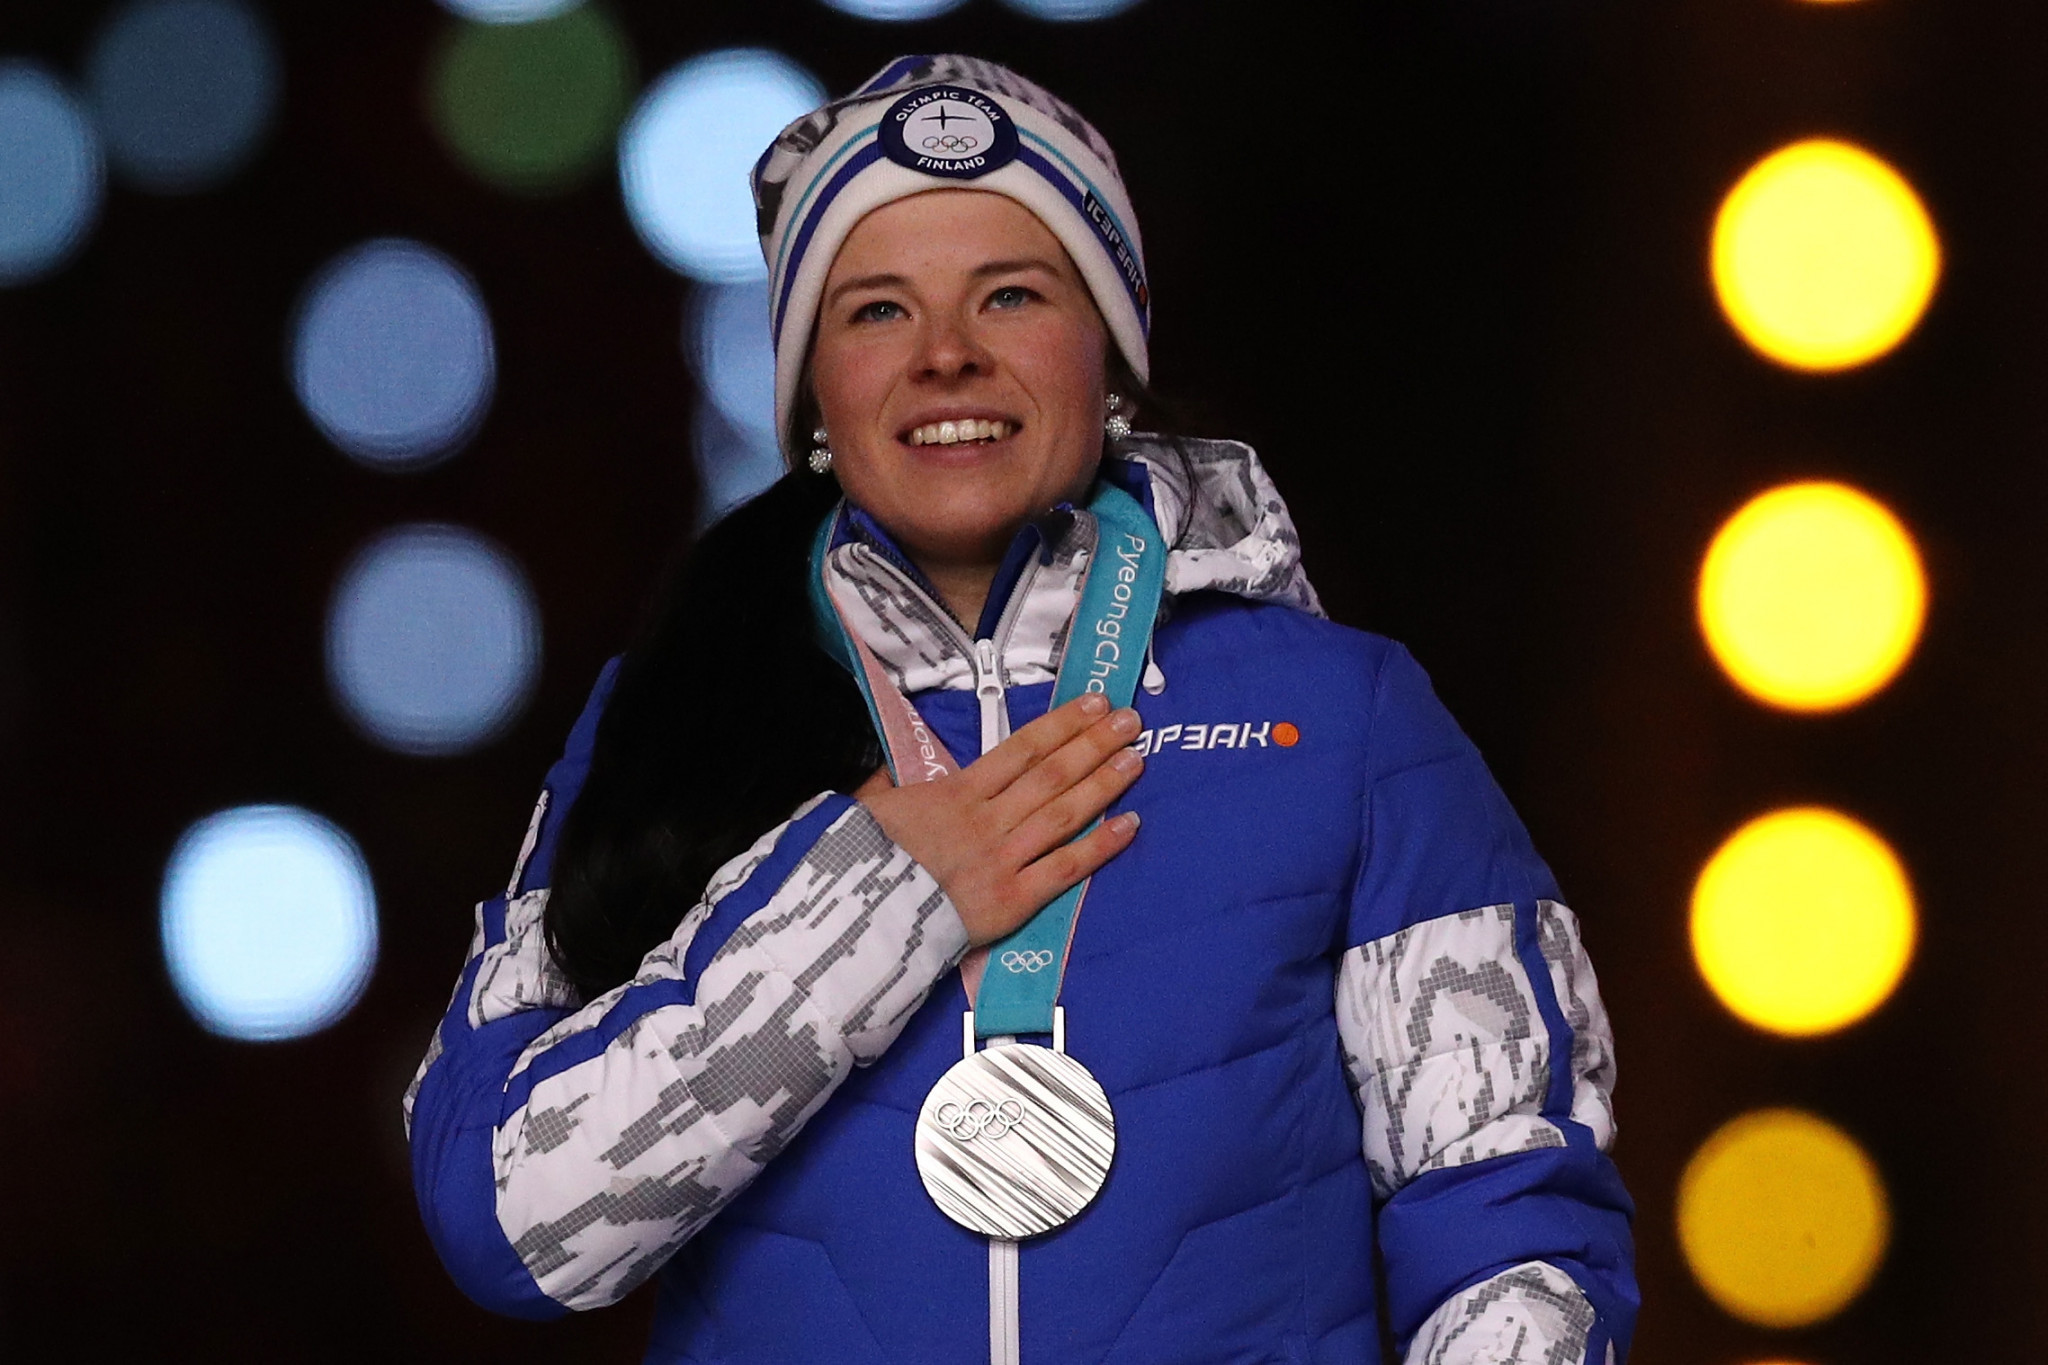 Quadruple Olympic medallist Pärmäkoski extends ski deal by two years